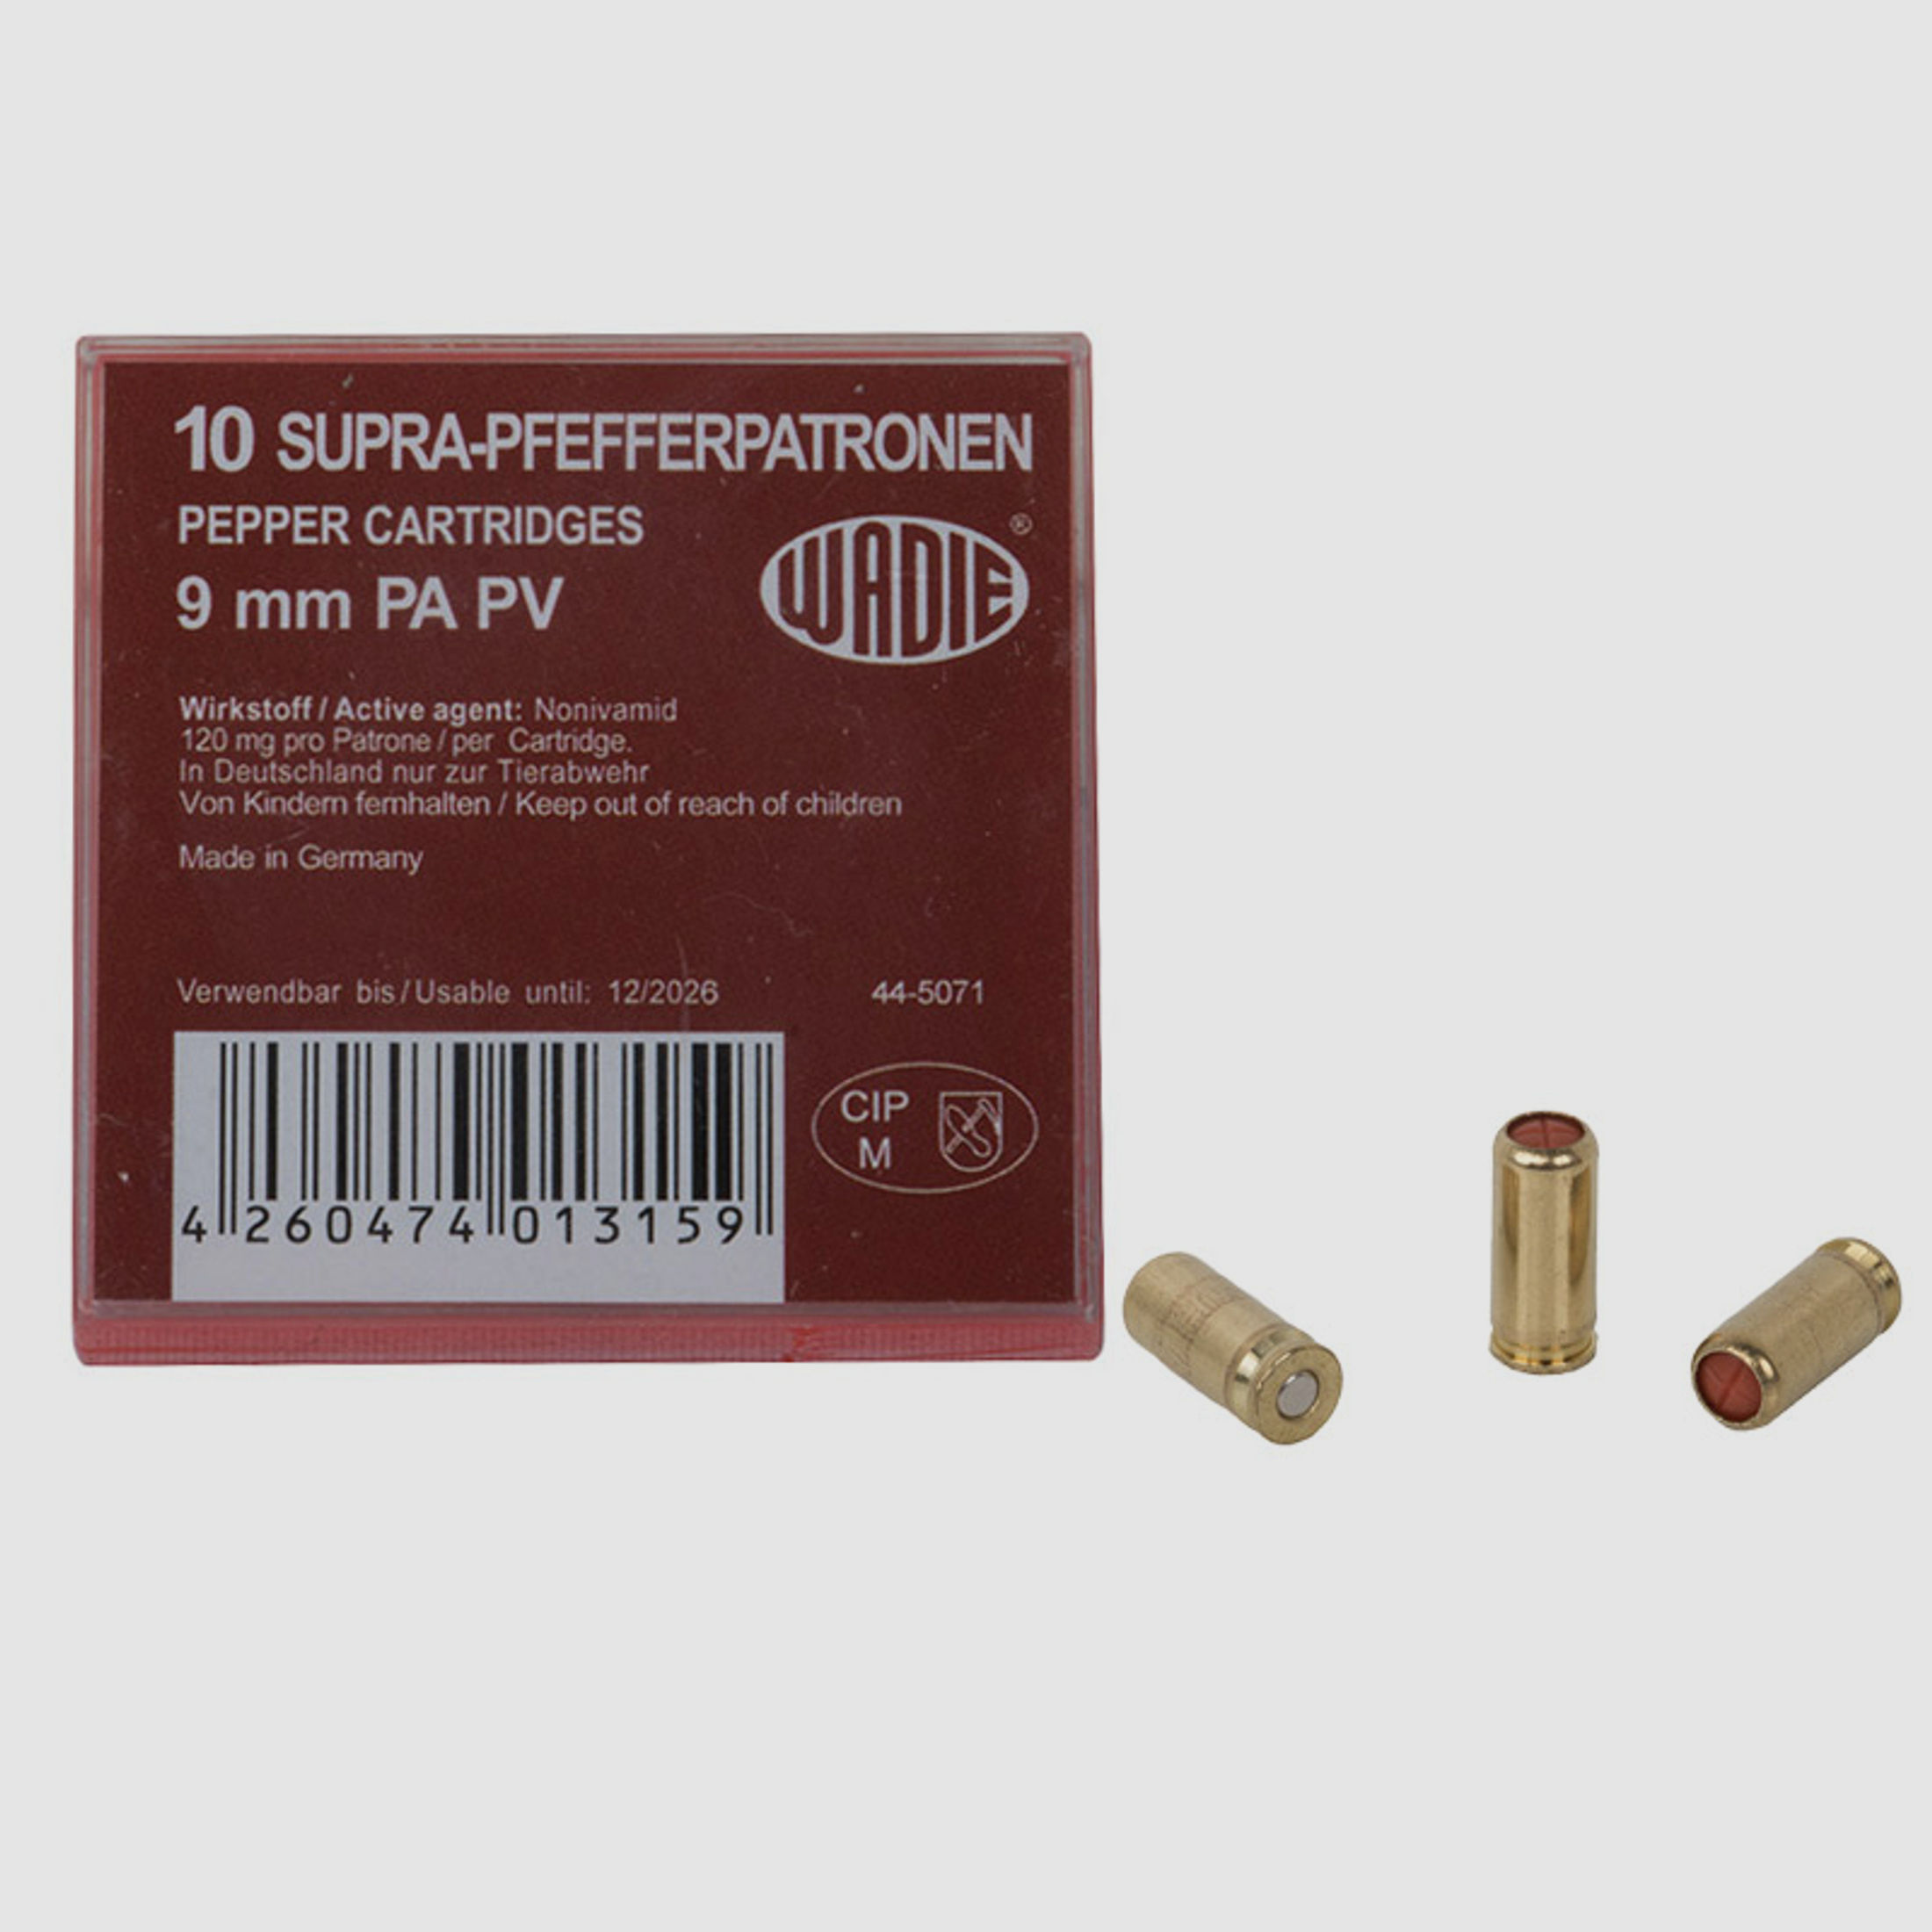 Supra Pfefferpatronen Abwehrpatronen Wadie Kaliber 9 mm P.A. PV fĂĽr Pistolen 120 mg Wirkstoff 10 StĂĽck (P18)